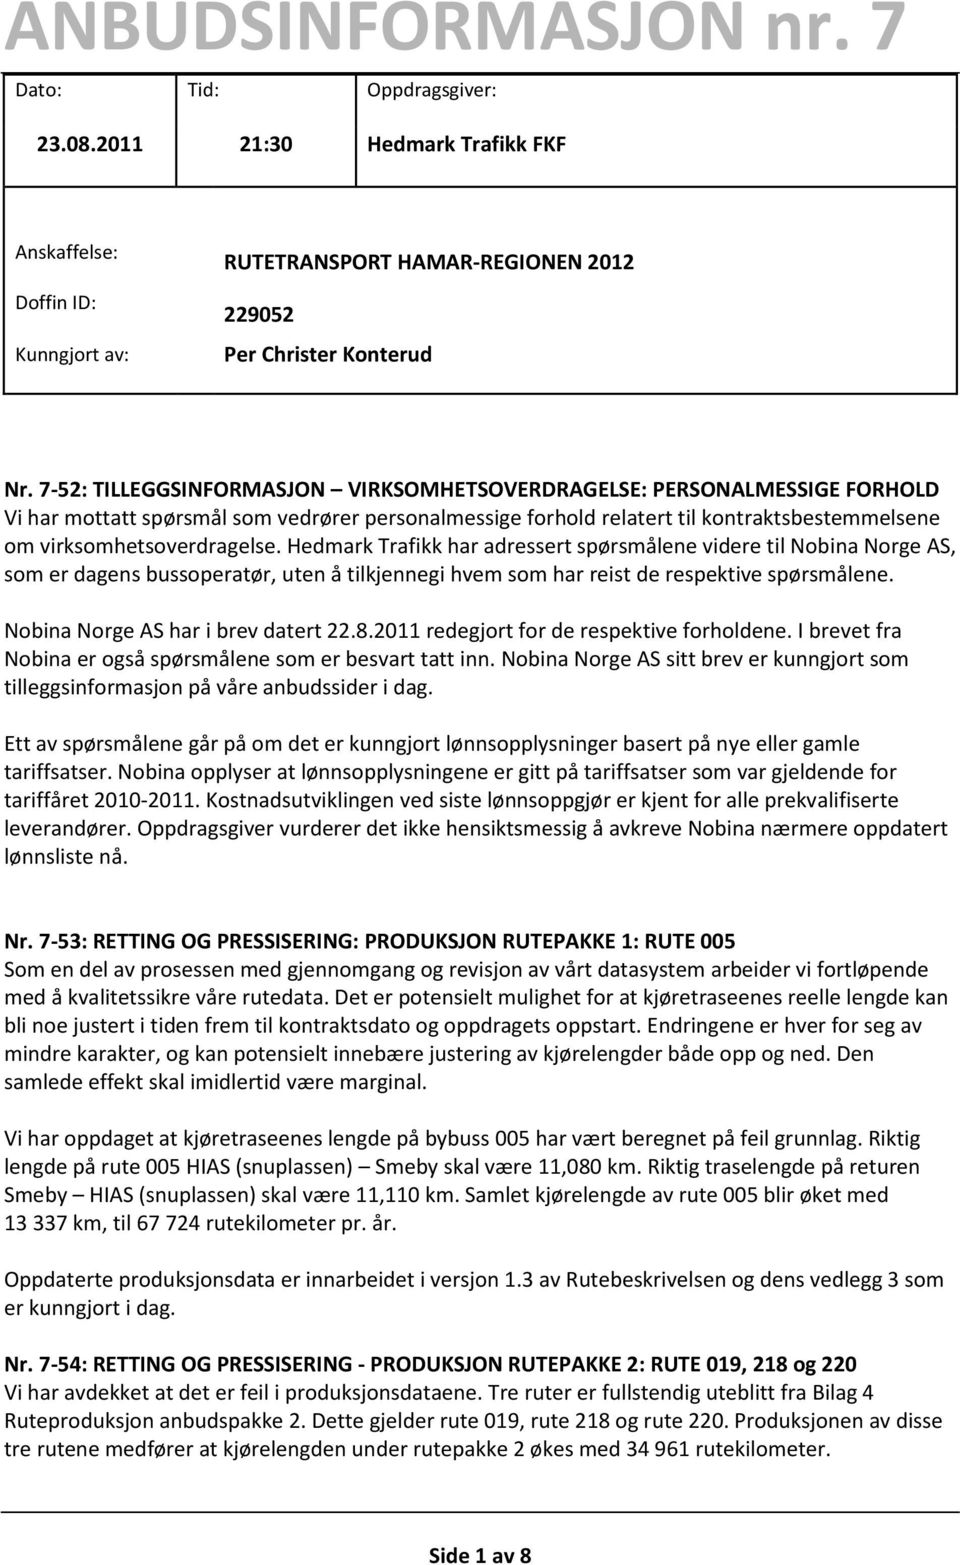 Hedmark Trafikk har adressert spørsmålene videre til Nobina Norge AS, som er dagens bussoperatør, uten å tilkjennegi hvem som har reist de respektive spørsmålene. Nobina Norge AS har i brev datert 22.